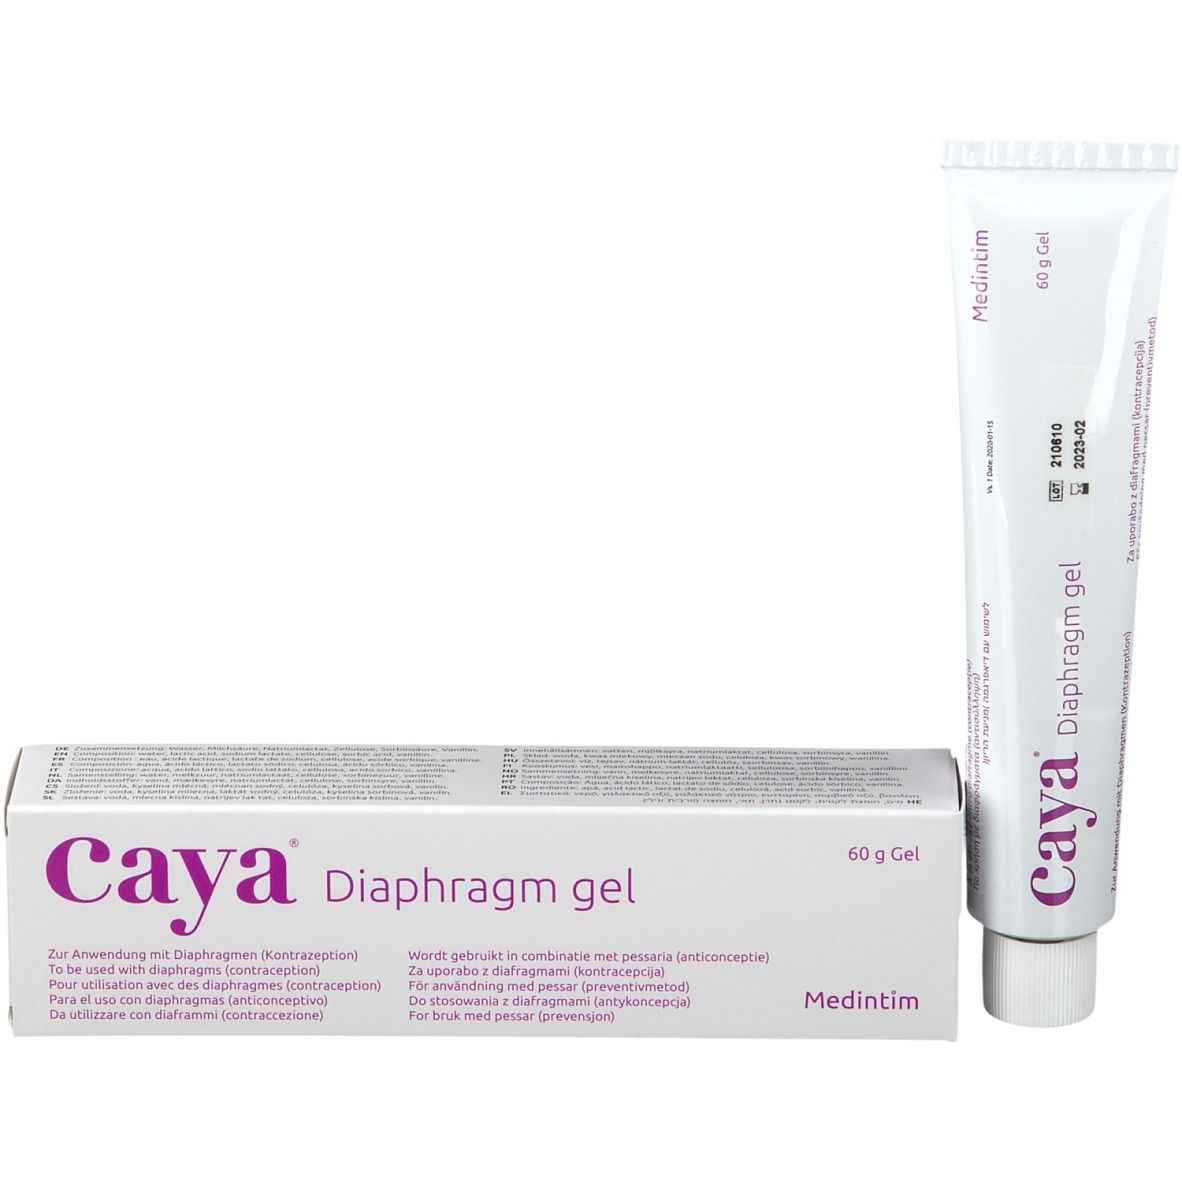 Caya® diaphragma Gel